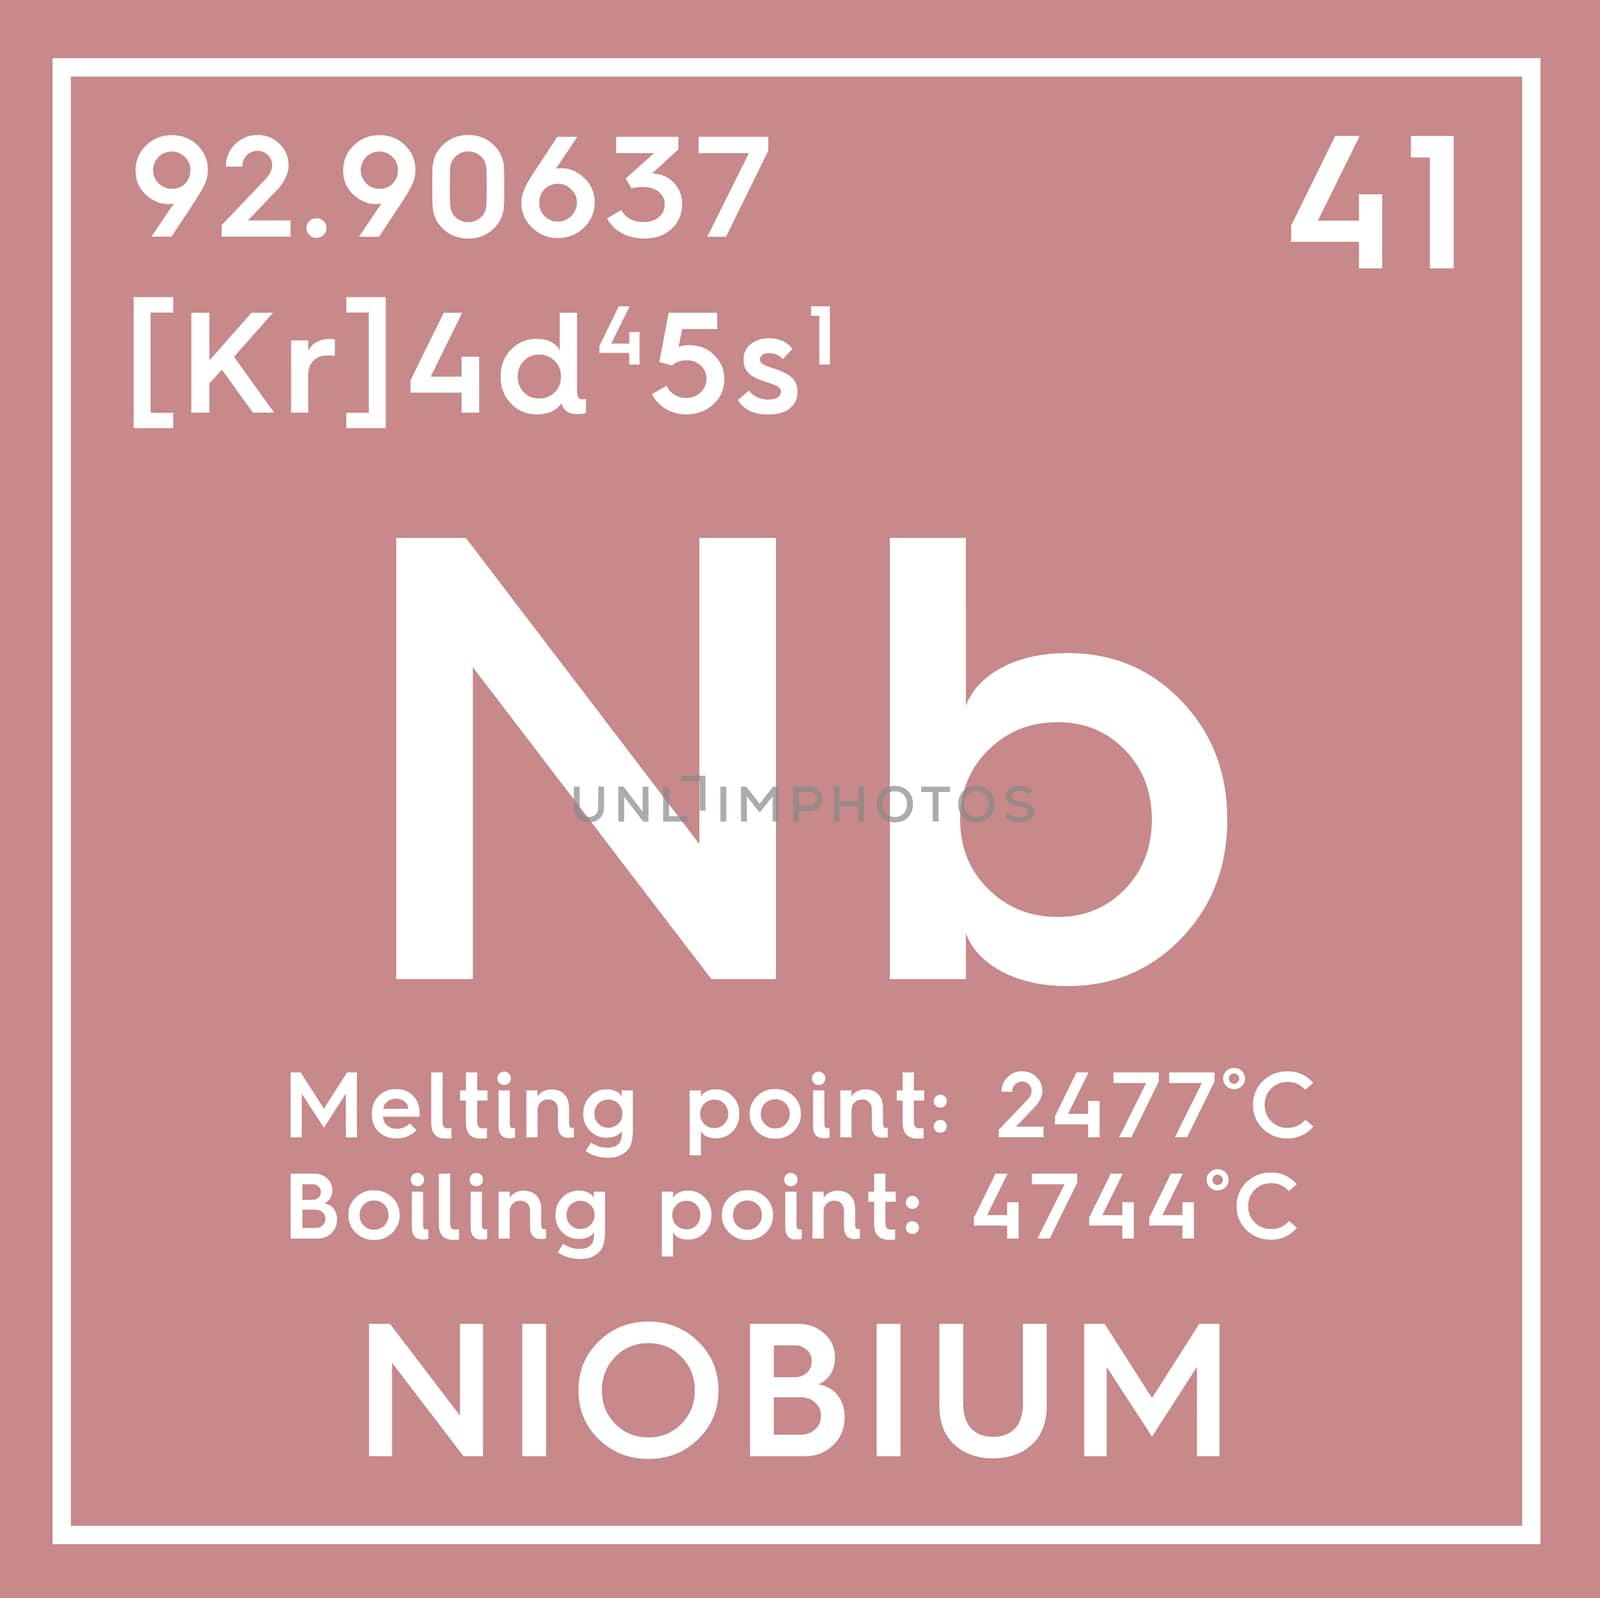 Niobium. Transition metals. Chemical Element of Mendeleev's Periodic Table. Niobium in square cube creative concept. 3D illustration.